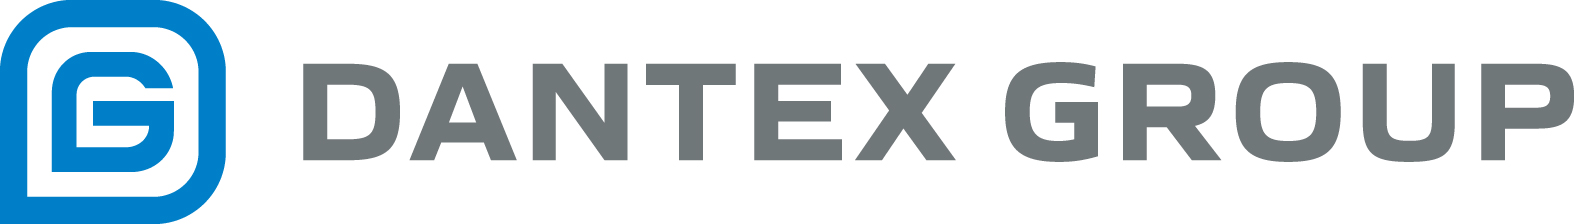 Dantex Group: отзывы от сотрудников и партнеров